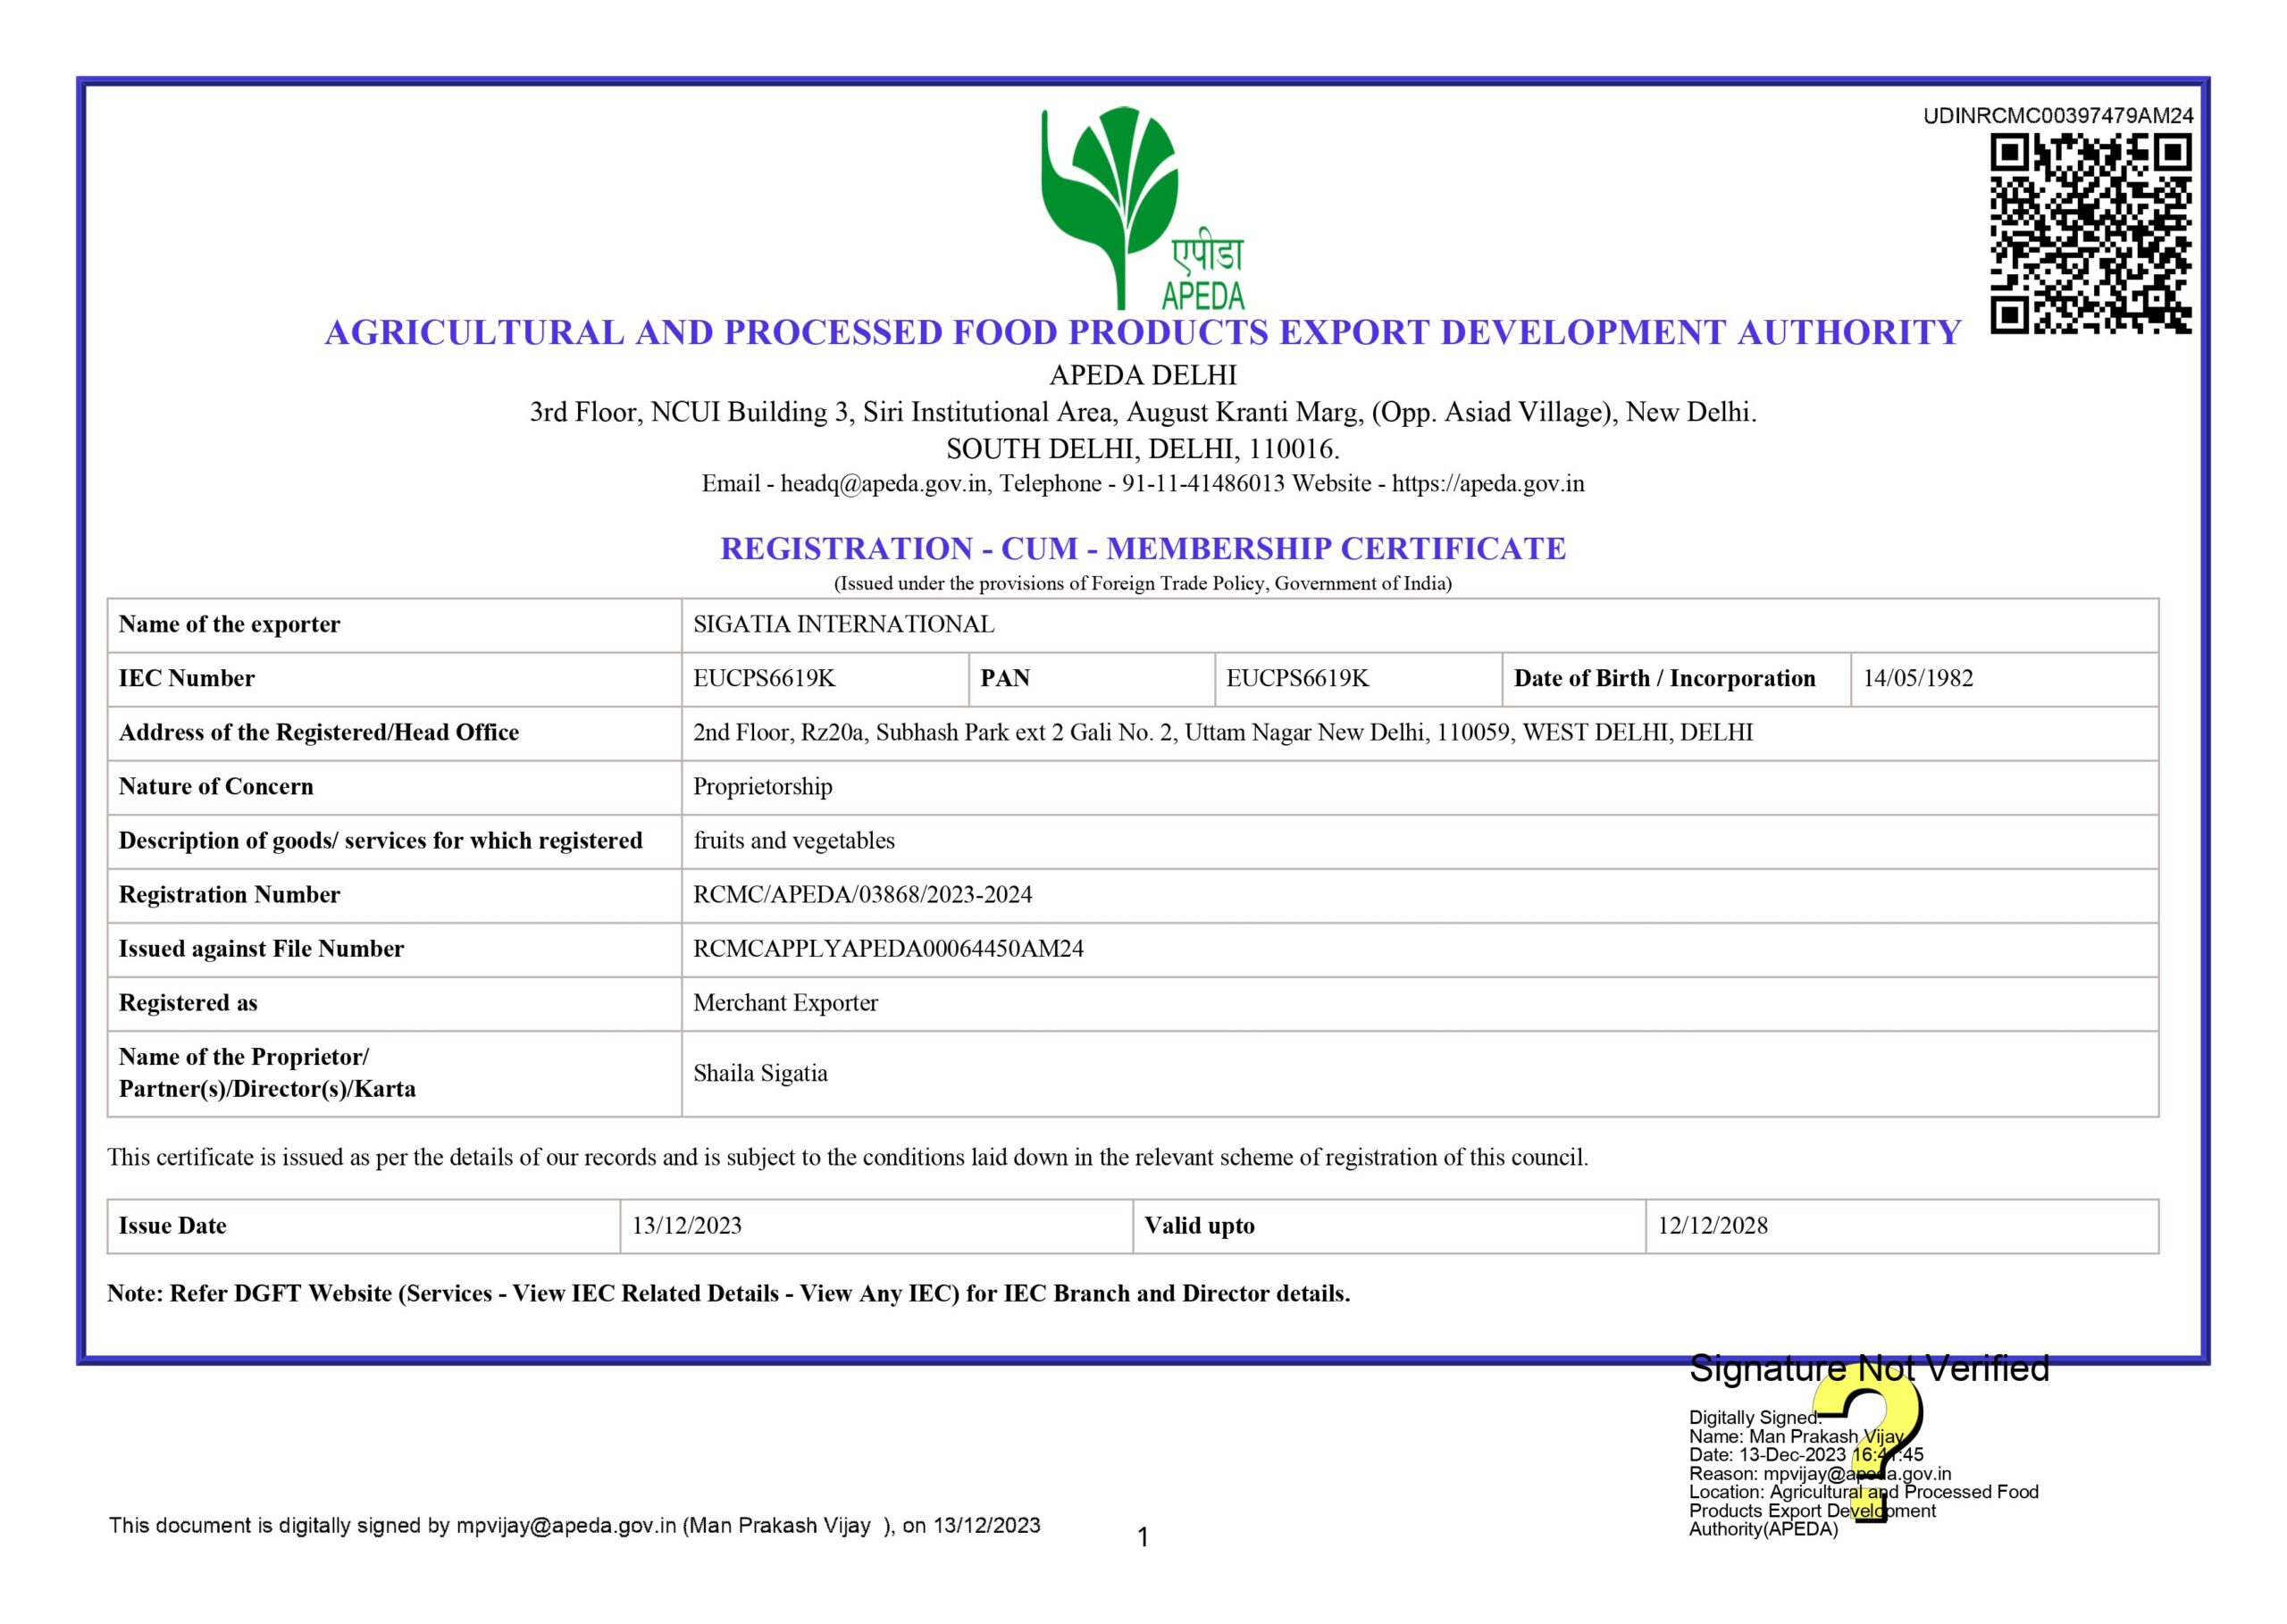 Registration-cum Membership Certificate (46)-images-1